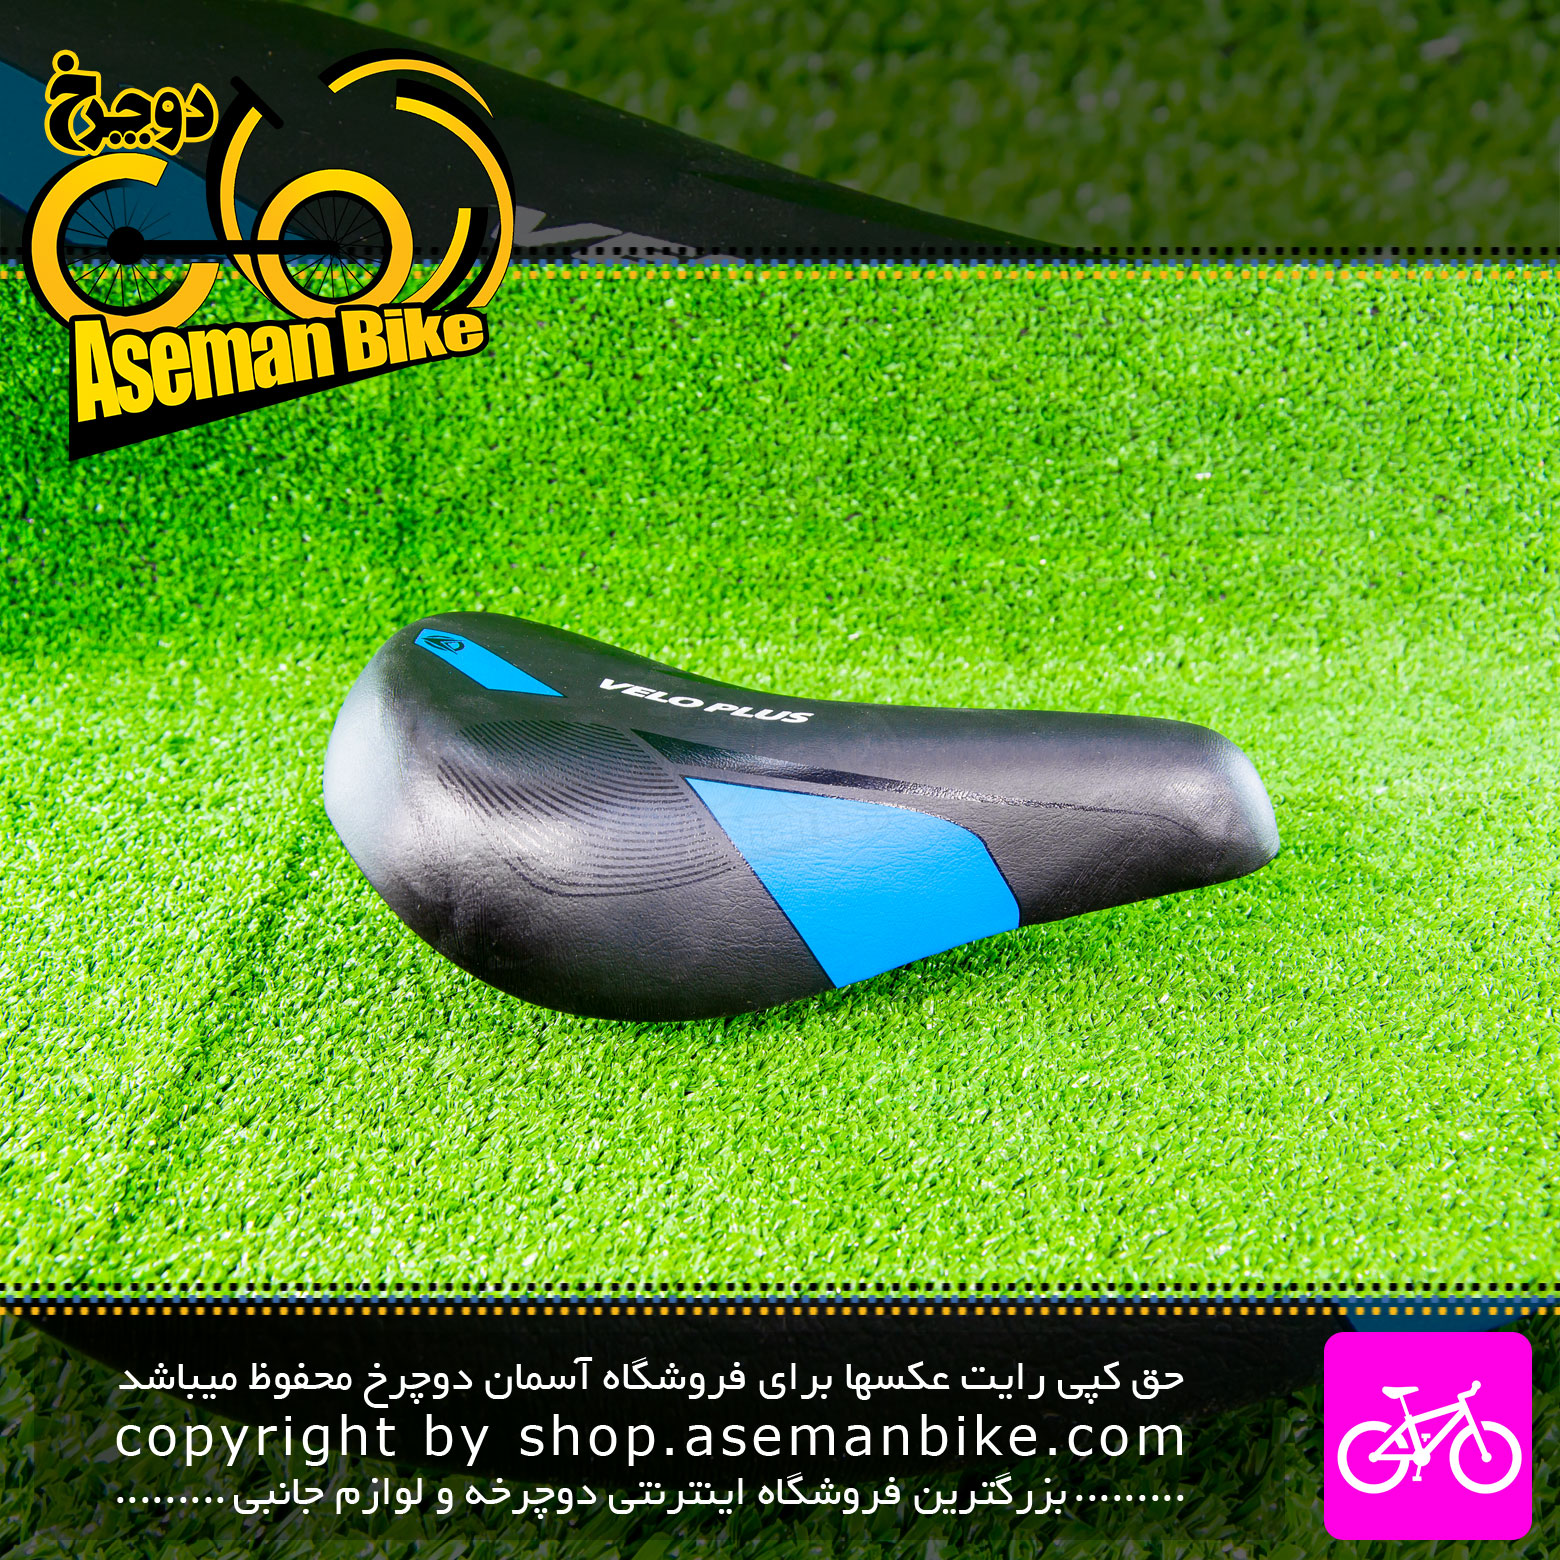 زین دوچرخه بچه گانه ولو پلاس مدل V10 رنگ مشکی آبی Velo Plus Kids Bicycle Saddle V10 Black Blue